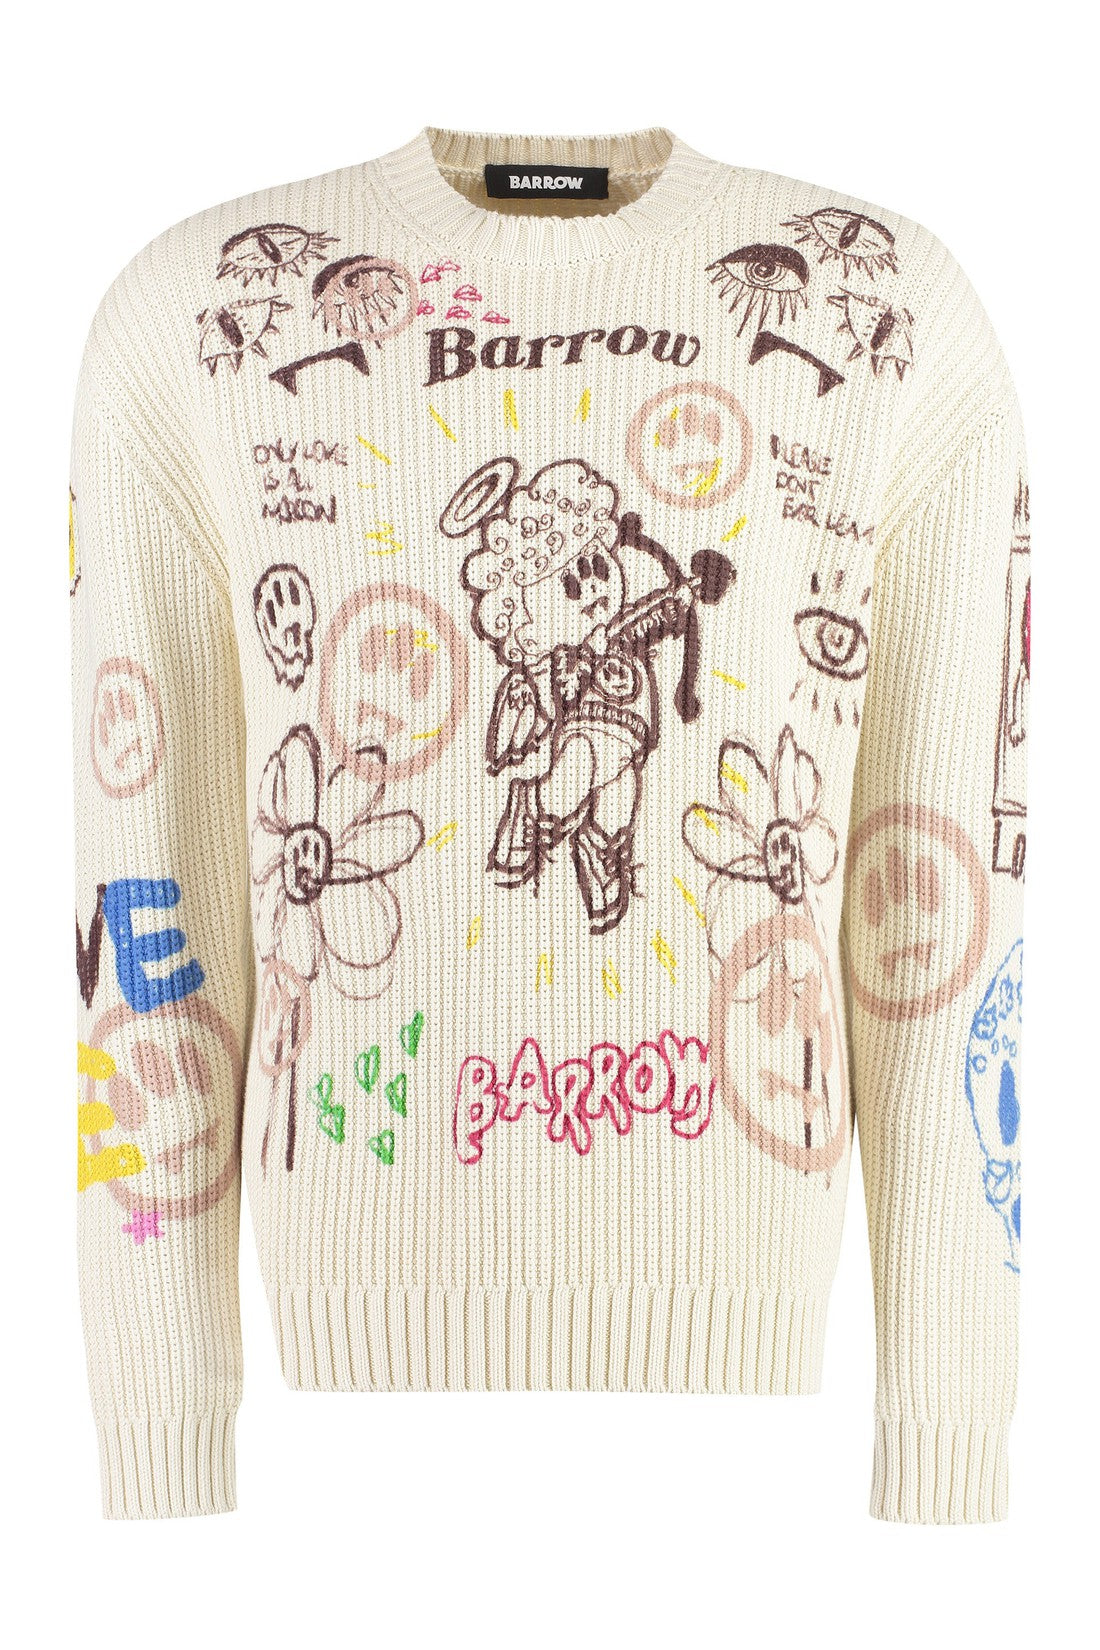 Barrow-OUTLET-SALE-Jacquard cotton sweater-ARCHIVIST